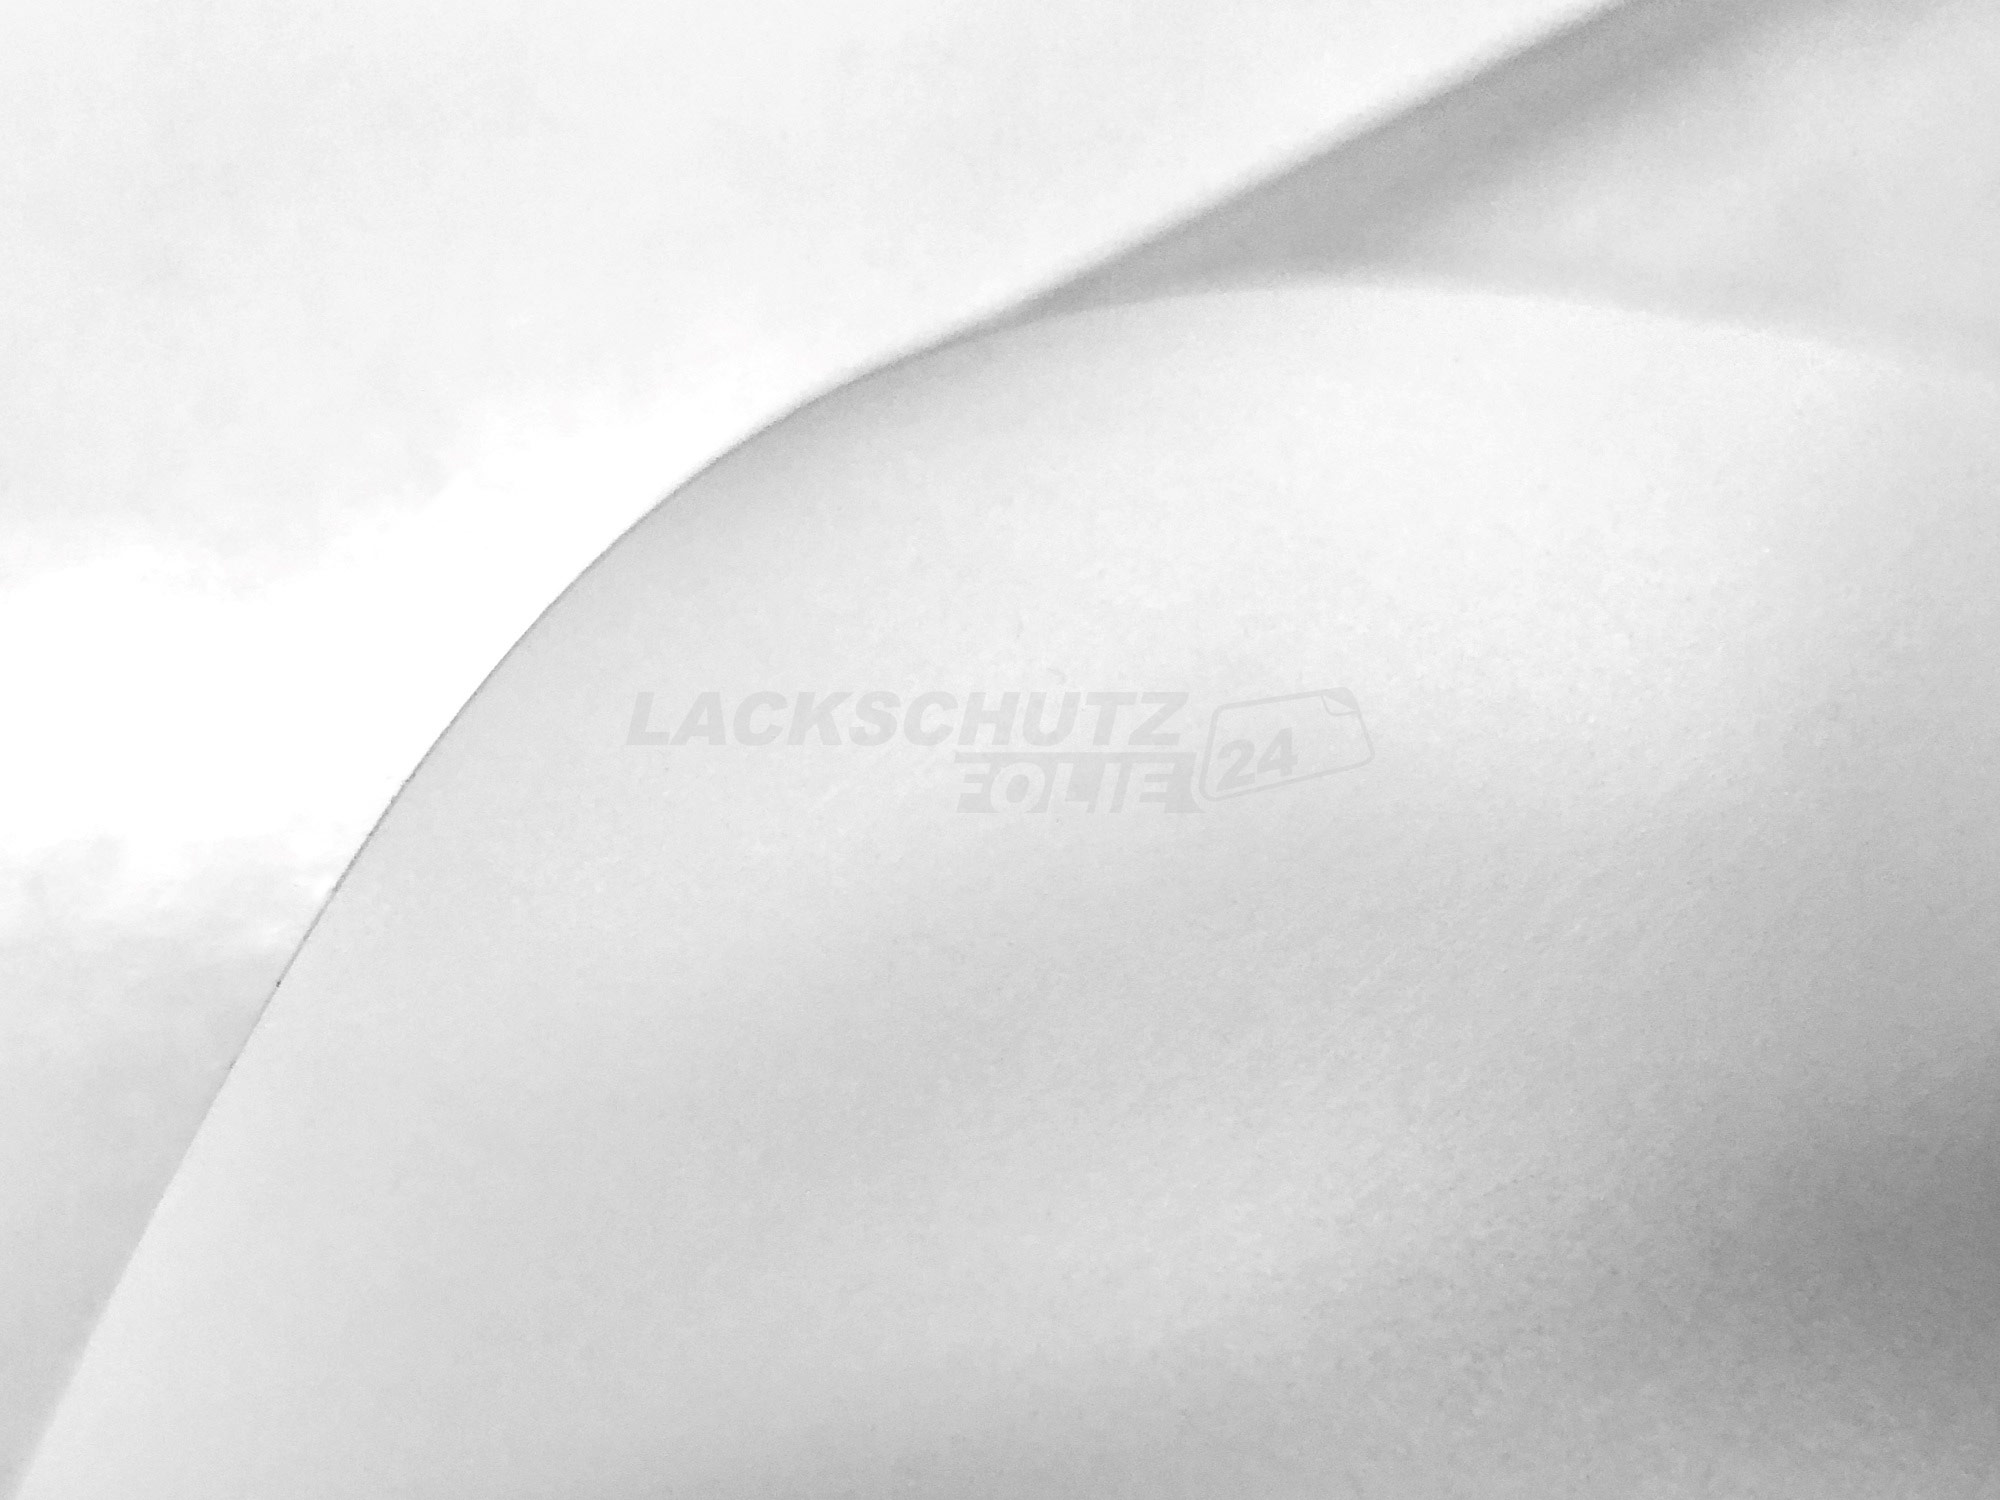 Ladekantenschutzfolie - Transparent Glatt MATT 110 µm stark  für Toyota Auris Schraeghecklimousine (II) Typ E180, ab BJ 2012-2019